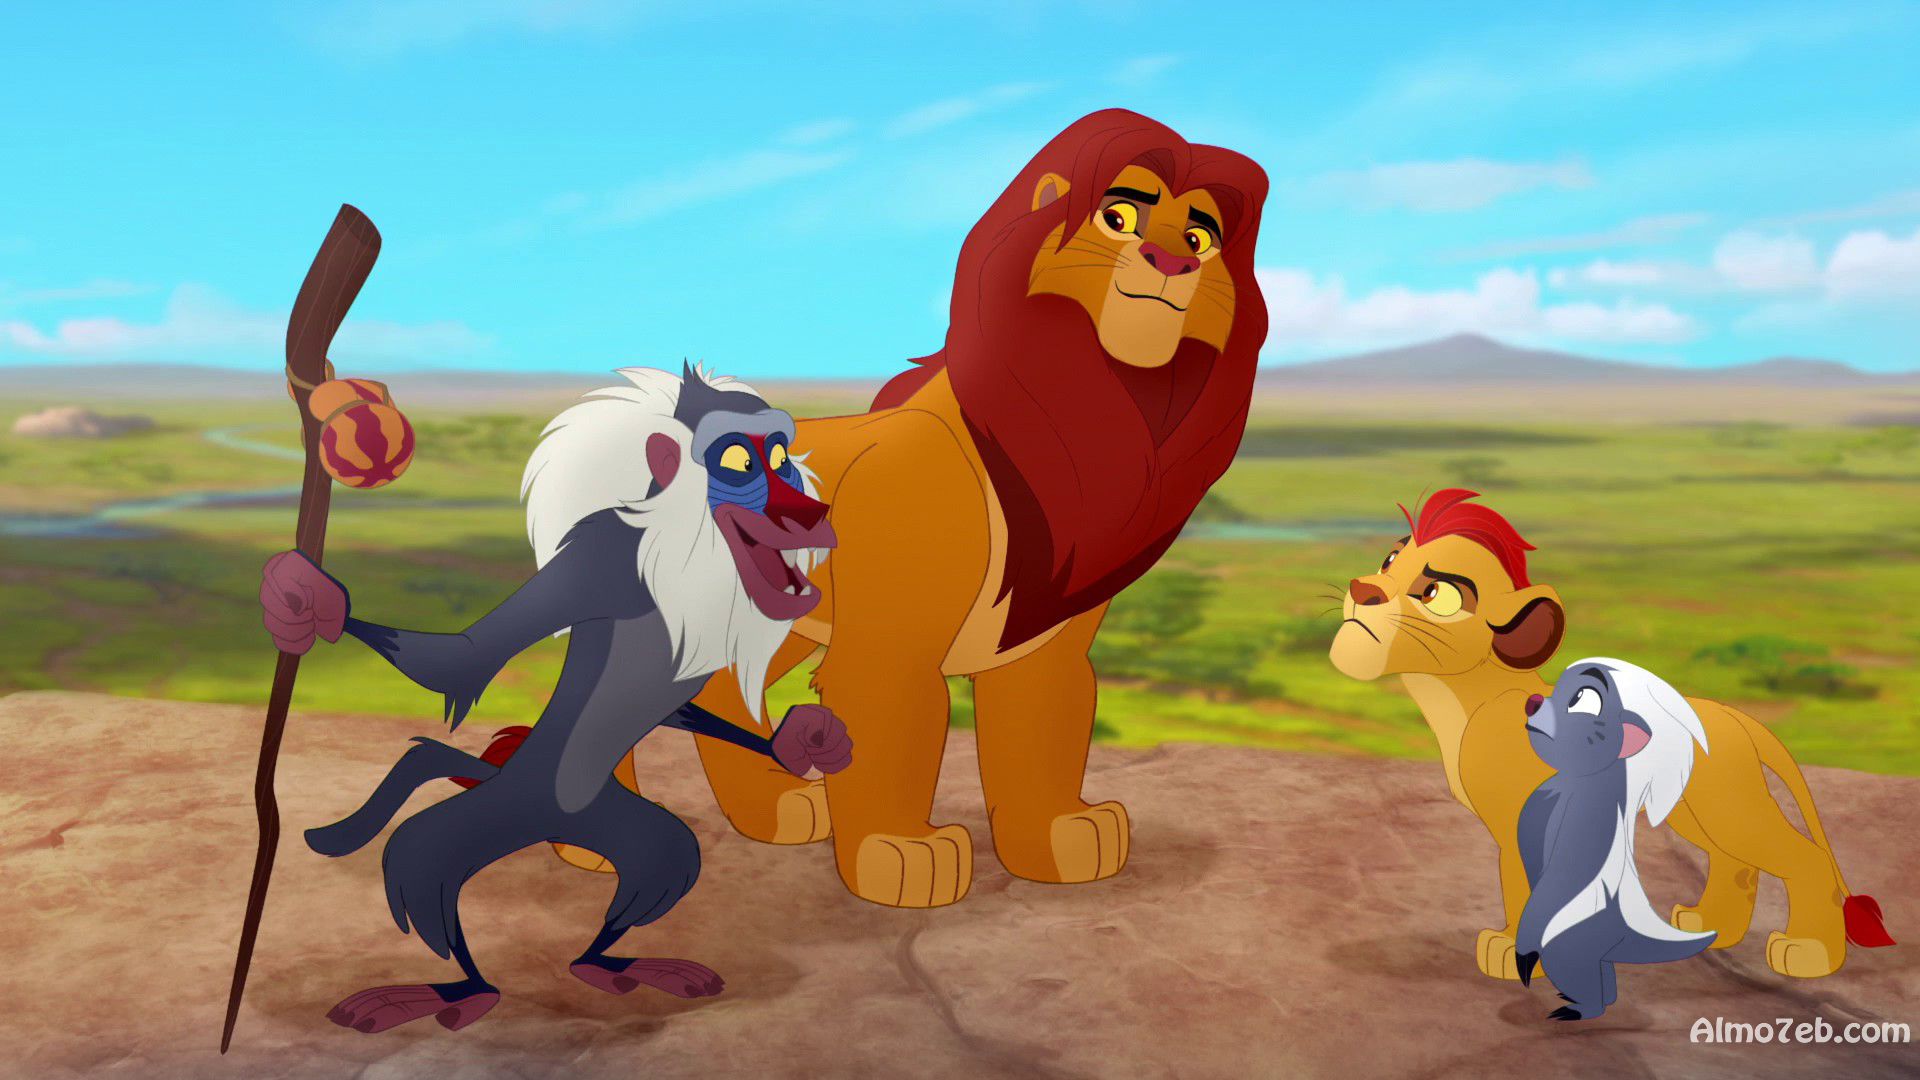 مجموعة صور خلفيات بجودة عالية من فلم الكرتون الملك الاسد: عودة الزئير The Lion Guard Return of the Roar